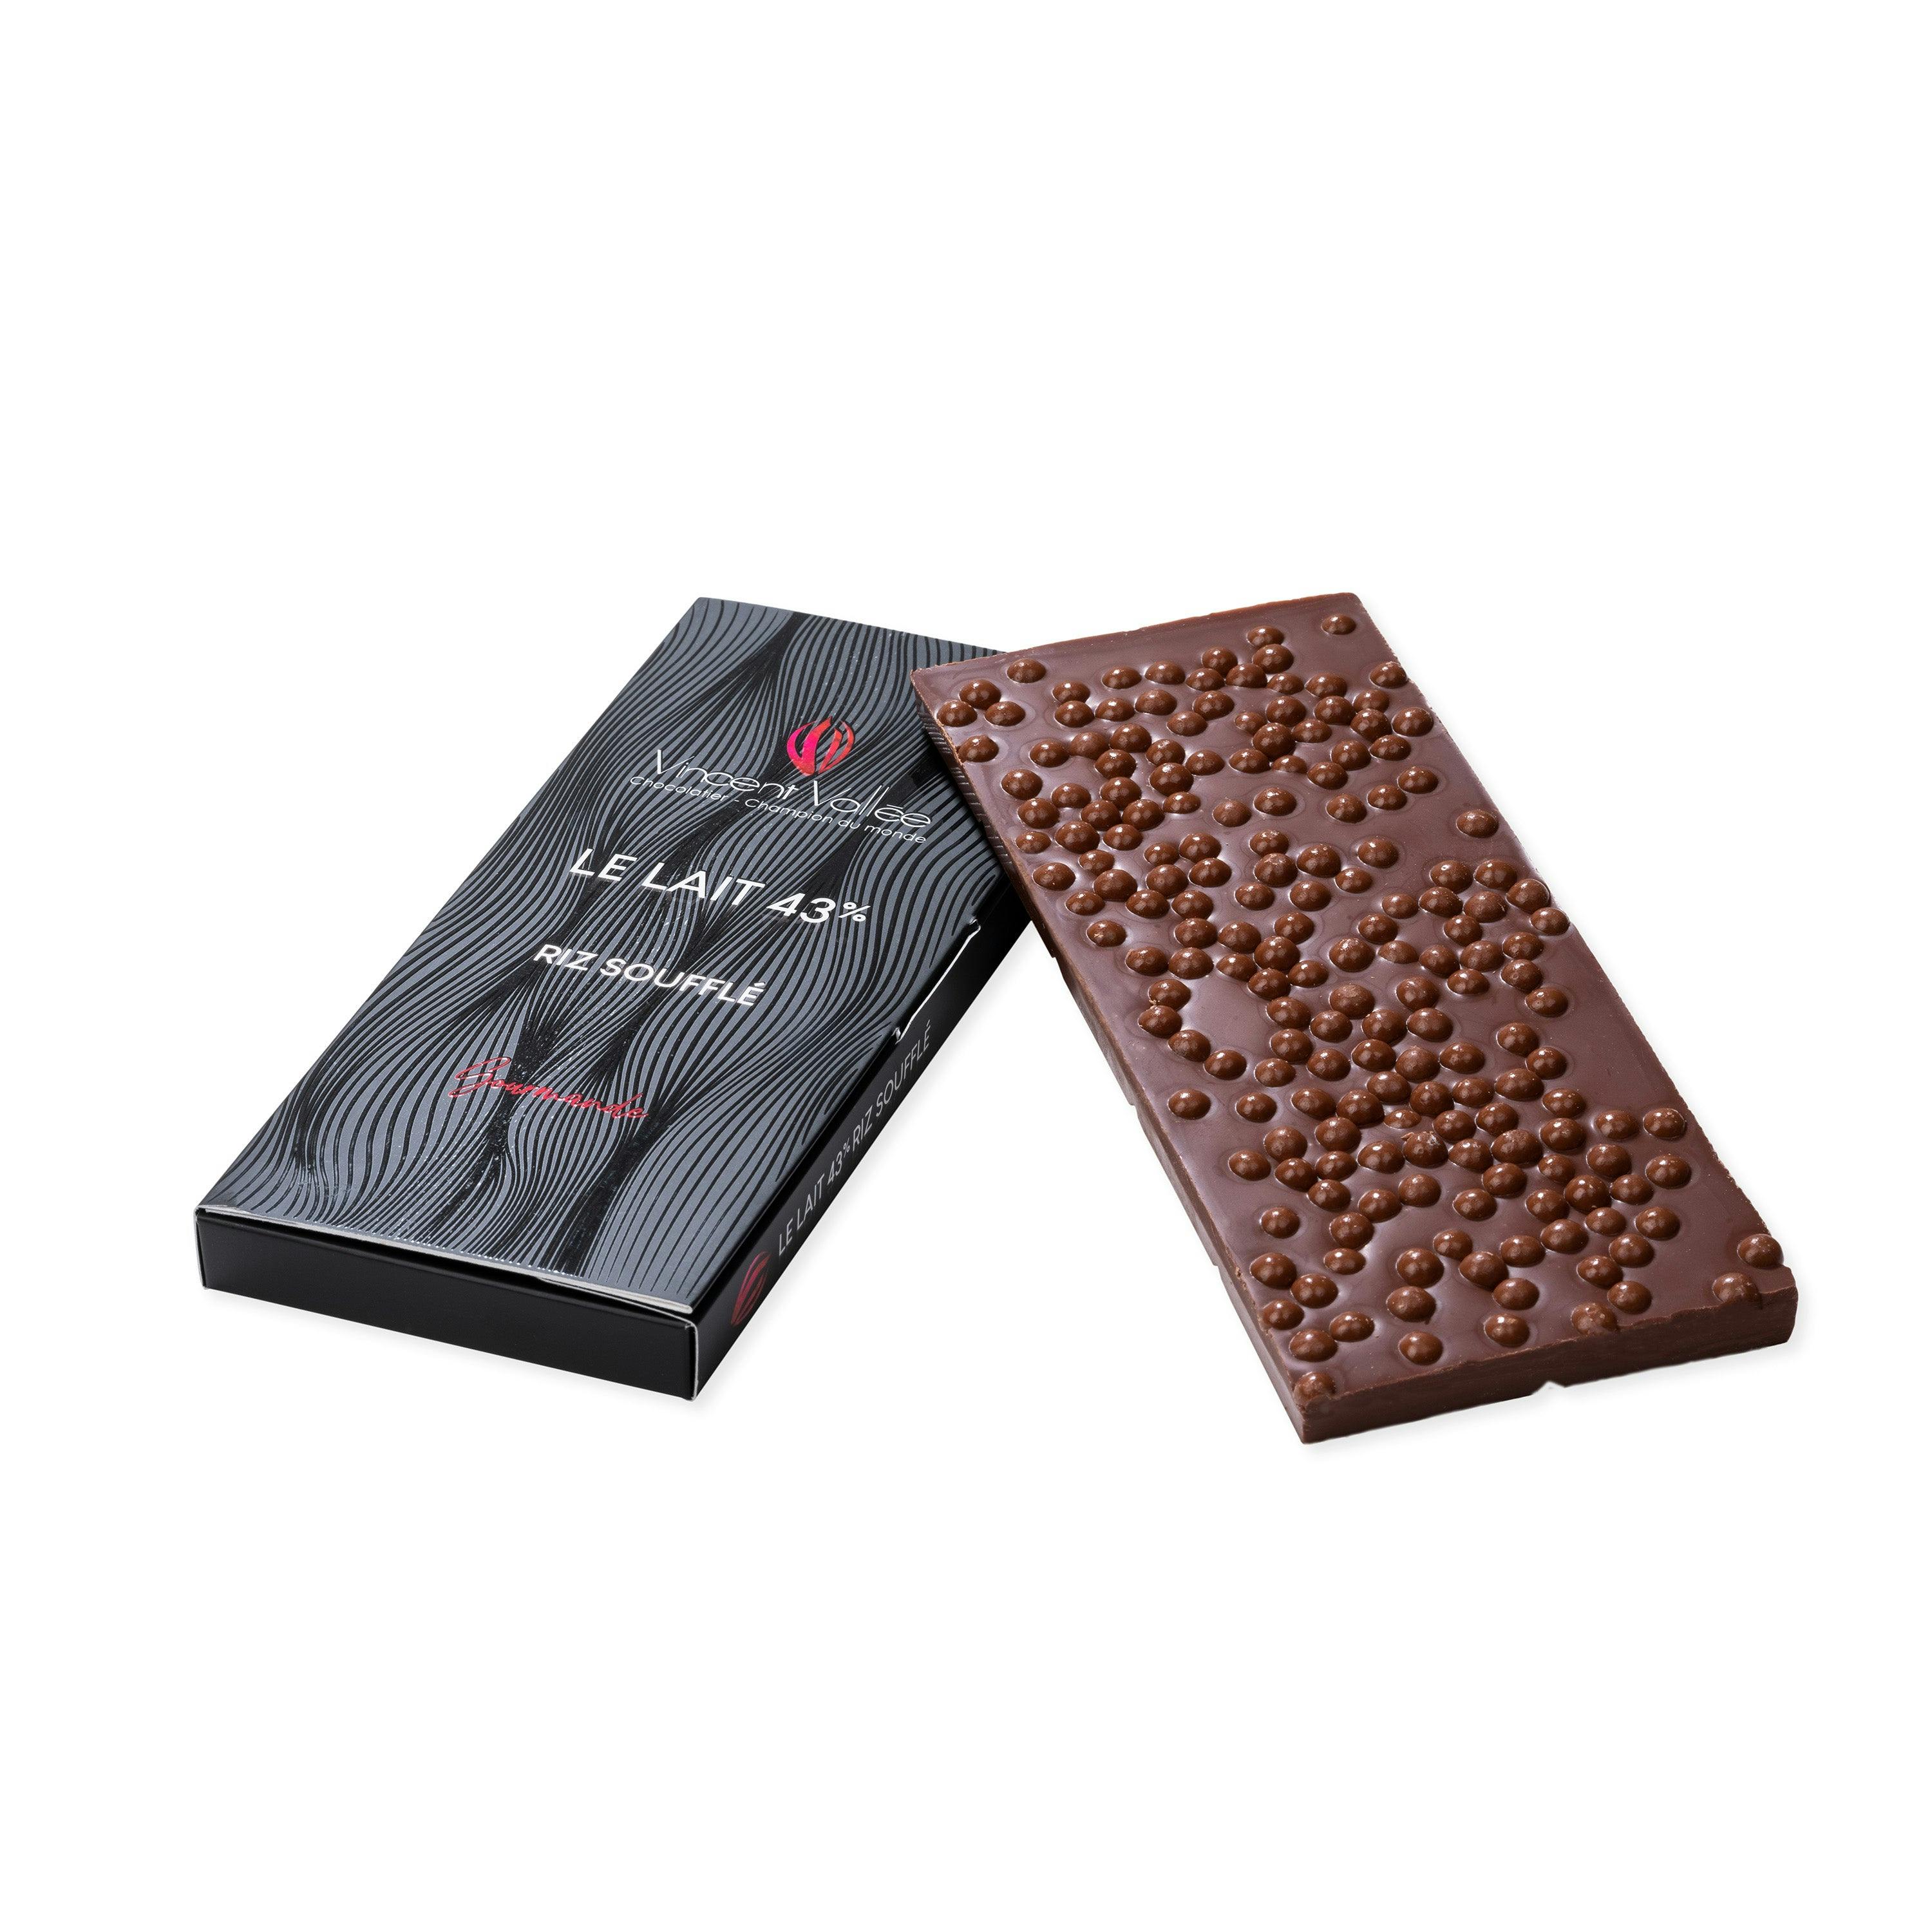 Tablette chocolat Lait Riz soufflé - Vincent Vallée chocolatier champion du monde